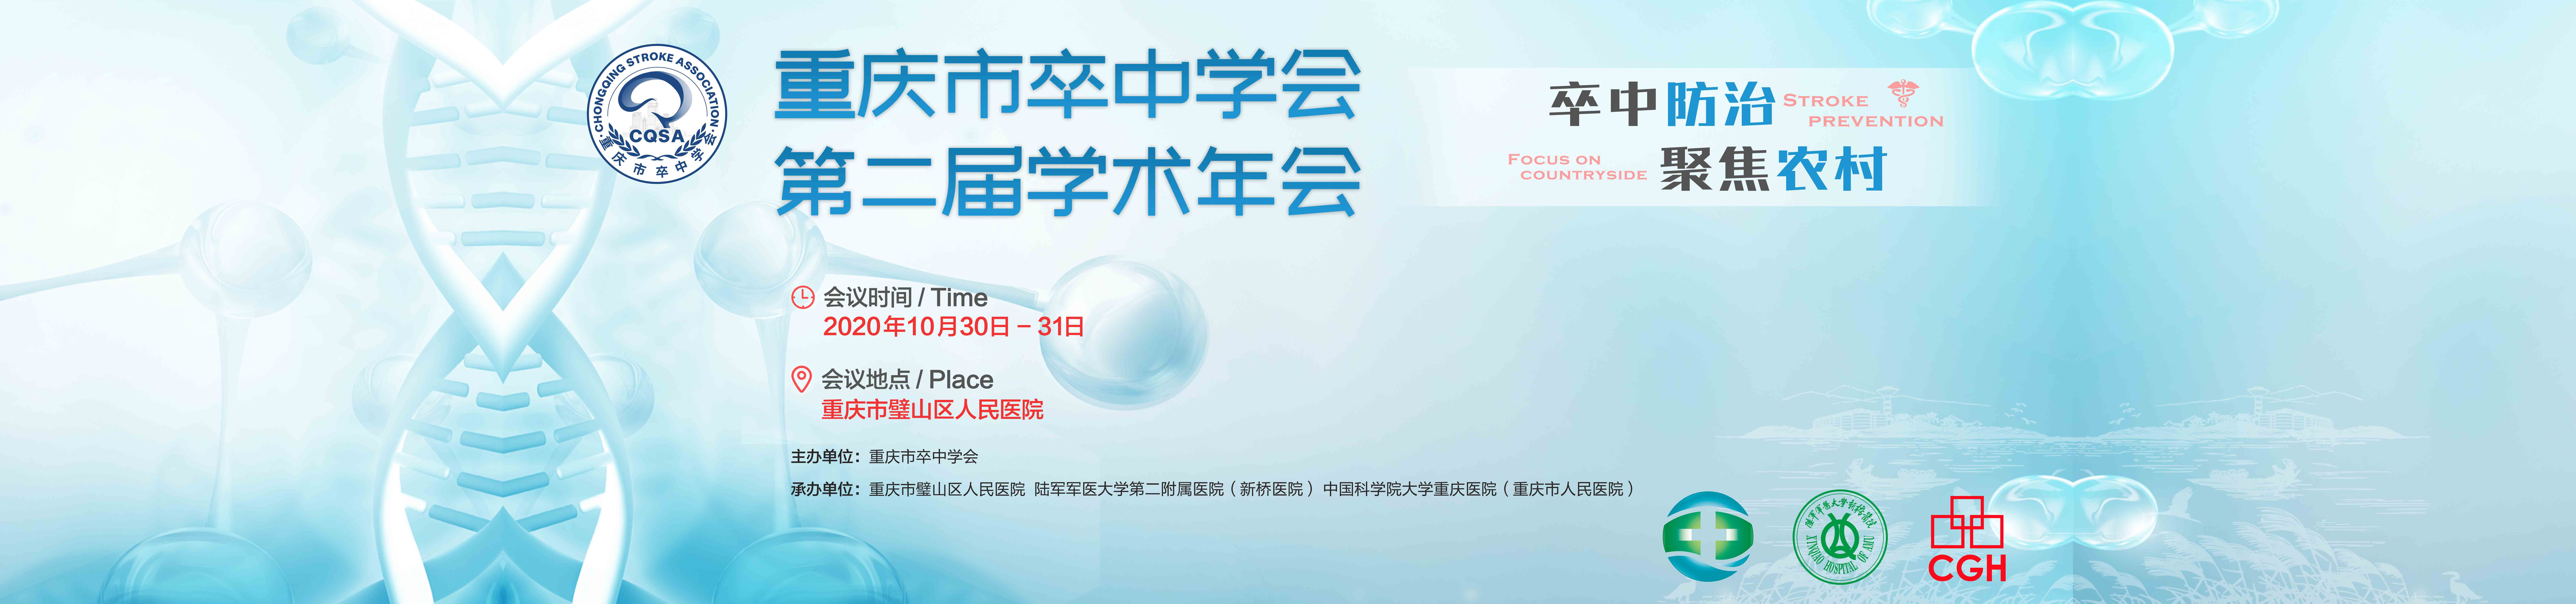 重庆市卒中学会第二届学术年会